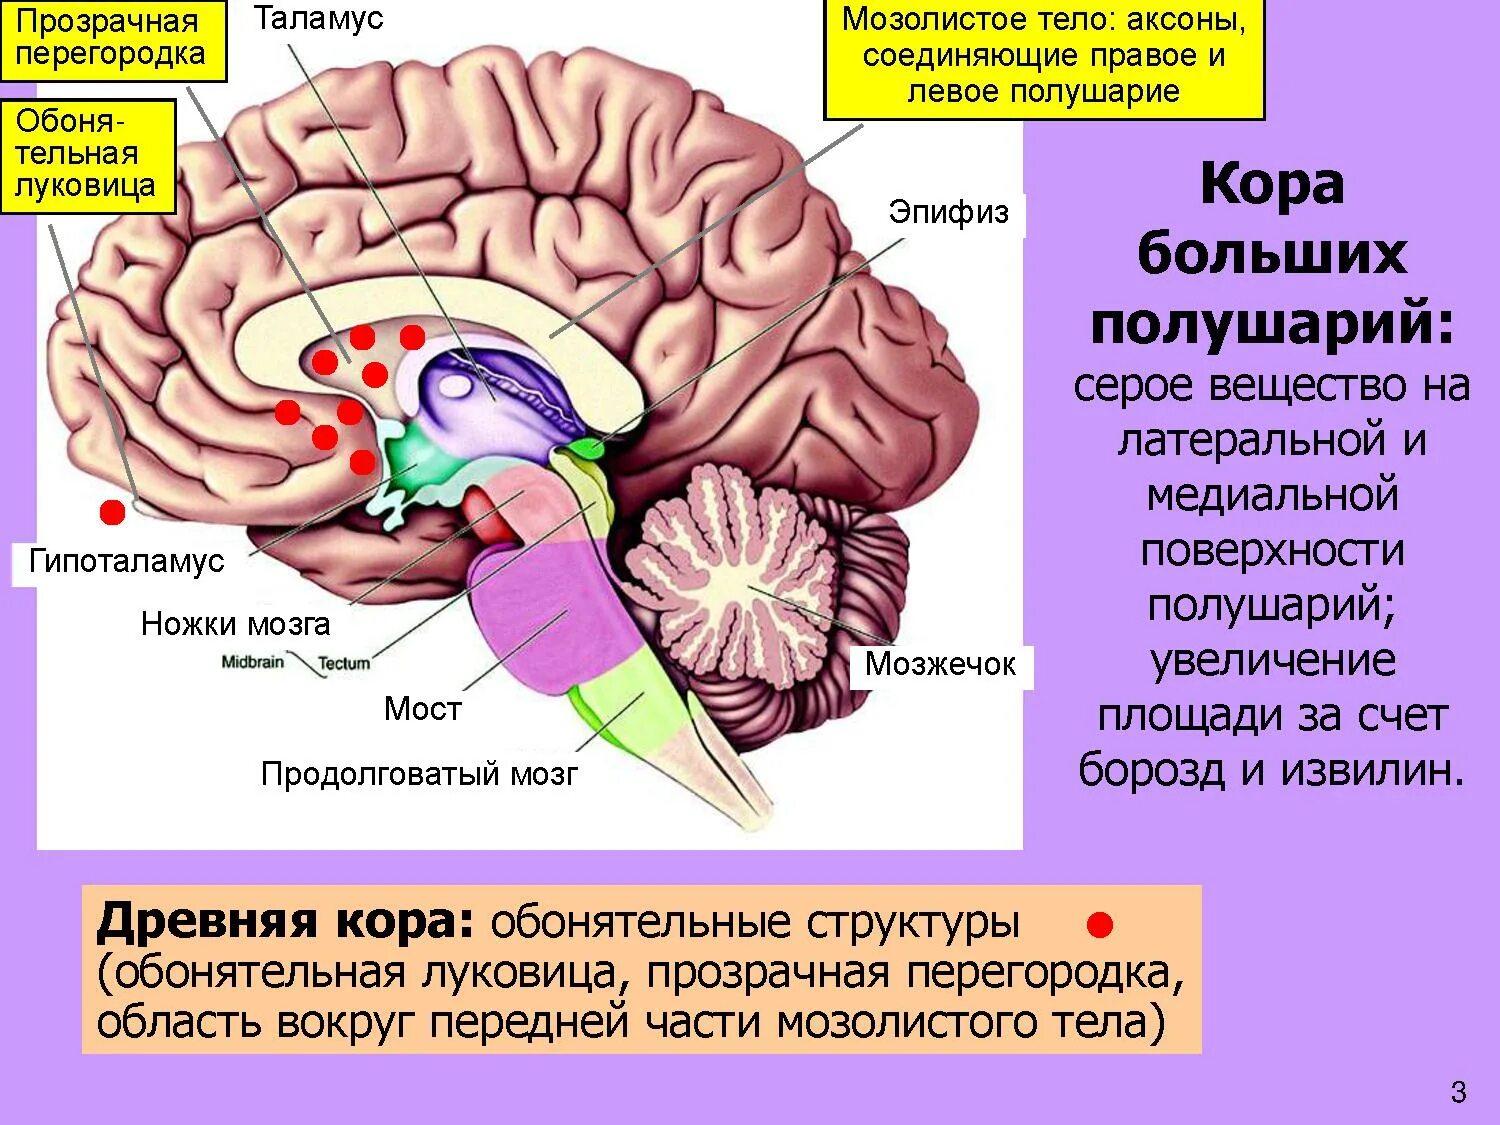 Структурные изменения мозга. Мозолистое тело конечного мозга функции. Прозрачная перегородка мозга анатомия. Строение мозолистого тела головного мозга. Таламус, гипоталамус, мост, мозжечок, продолговатый мозг..